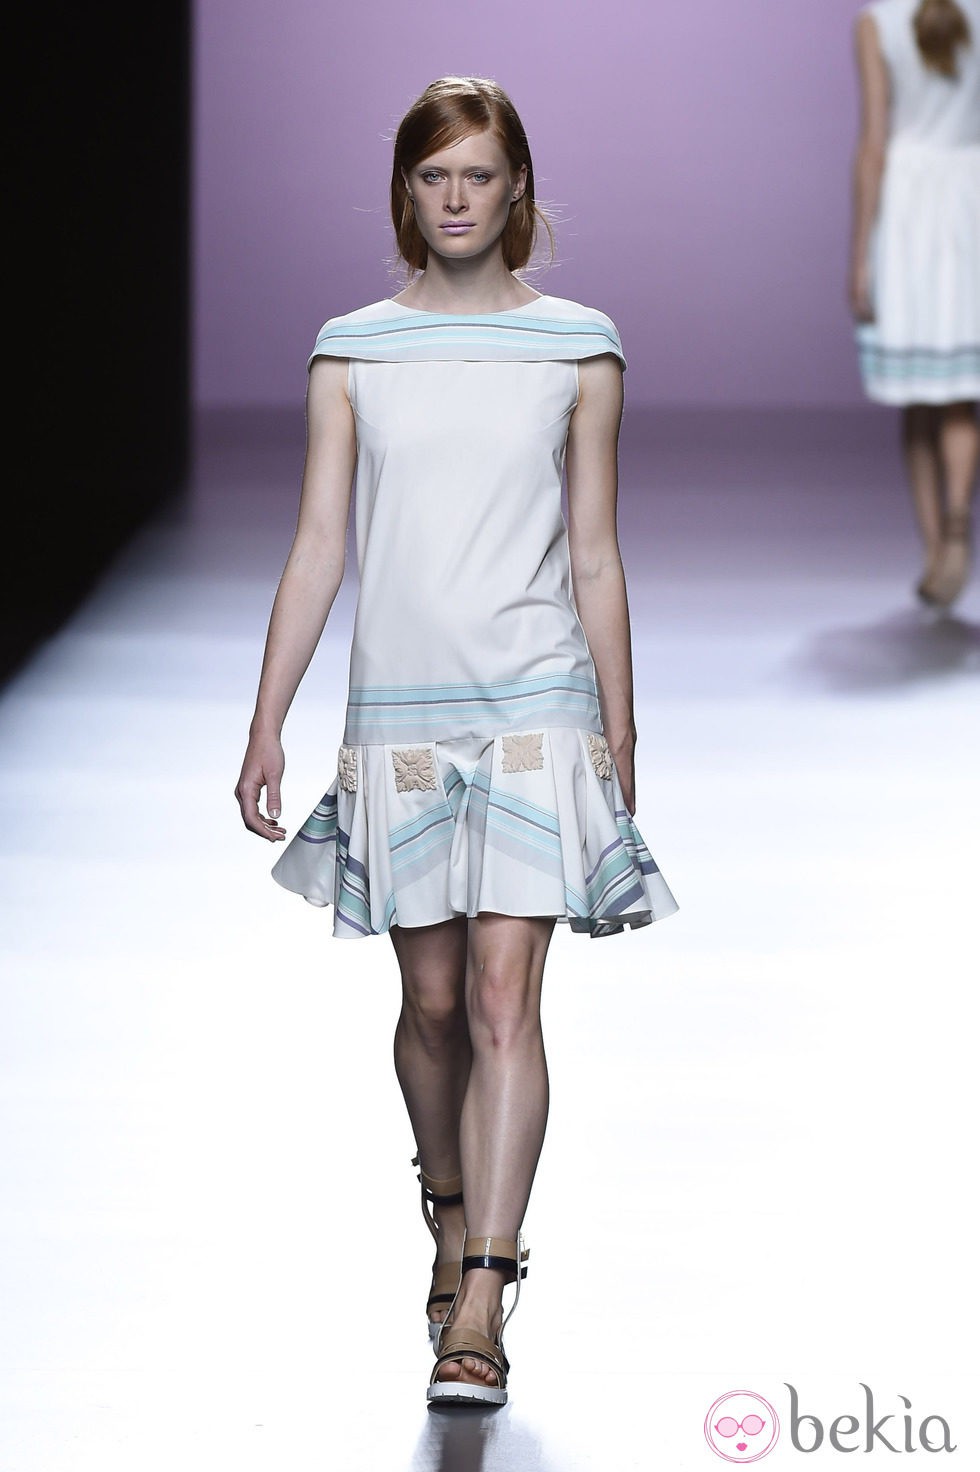 Vestido de rayas de Devota & Lomba en Madrid Fashion Week pirmavera/verano 2015